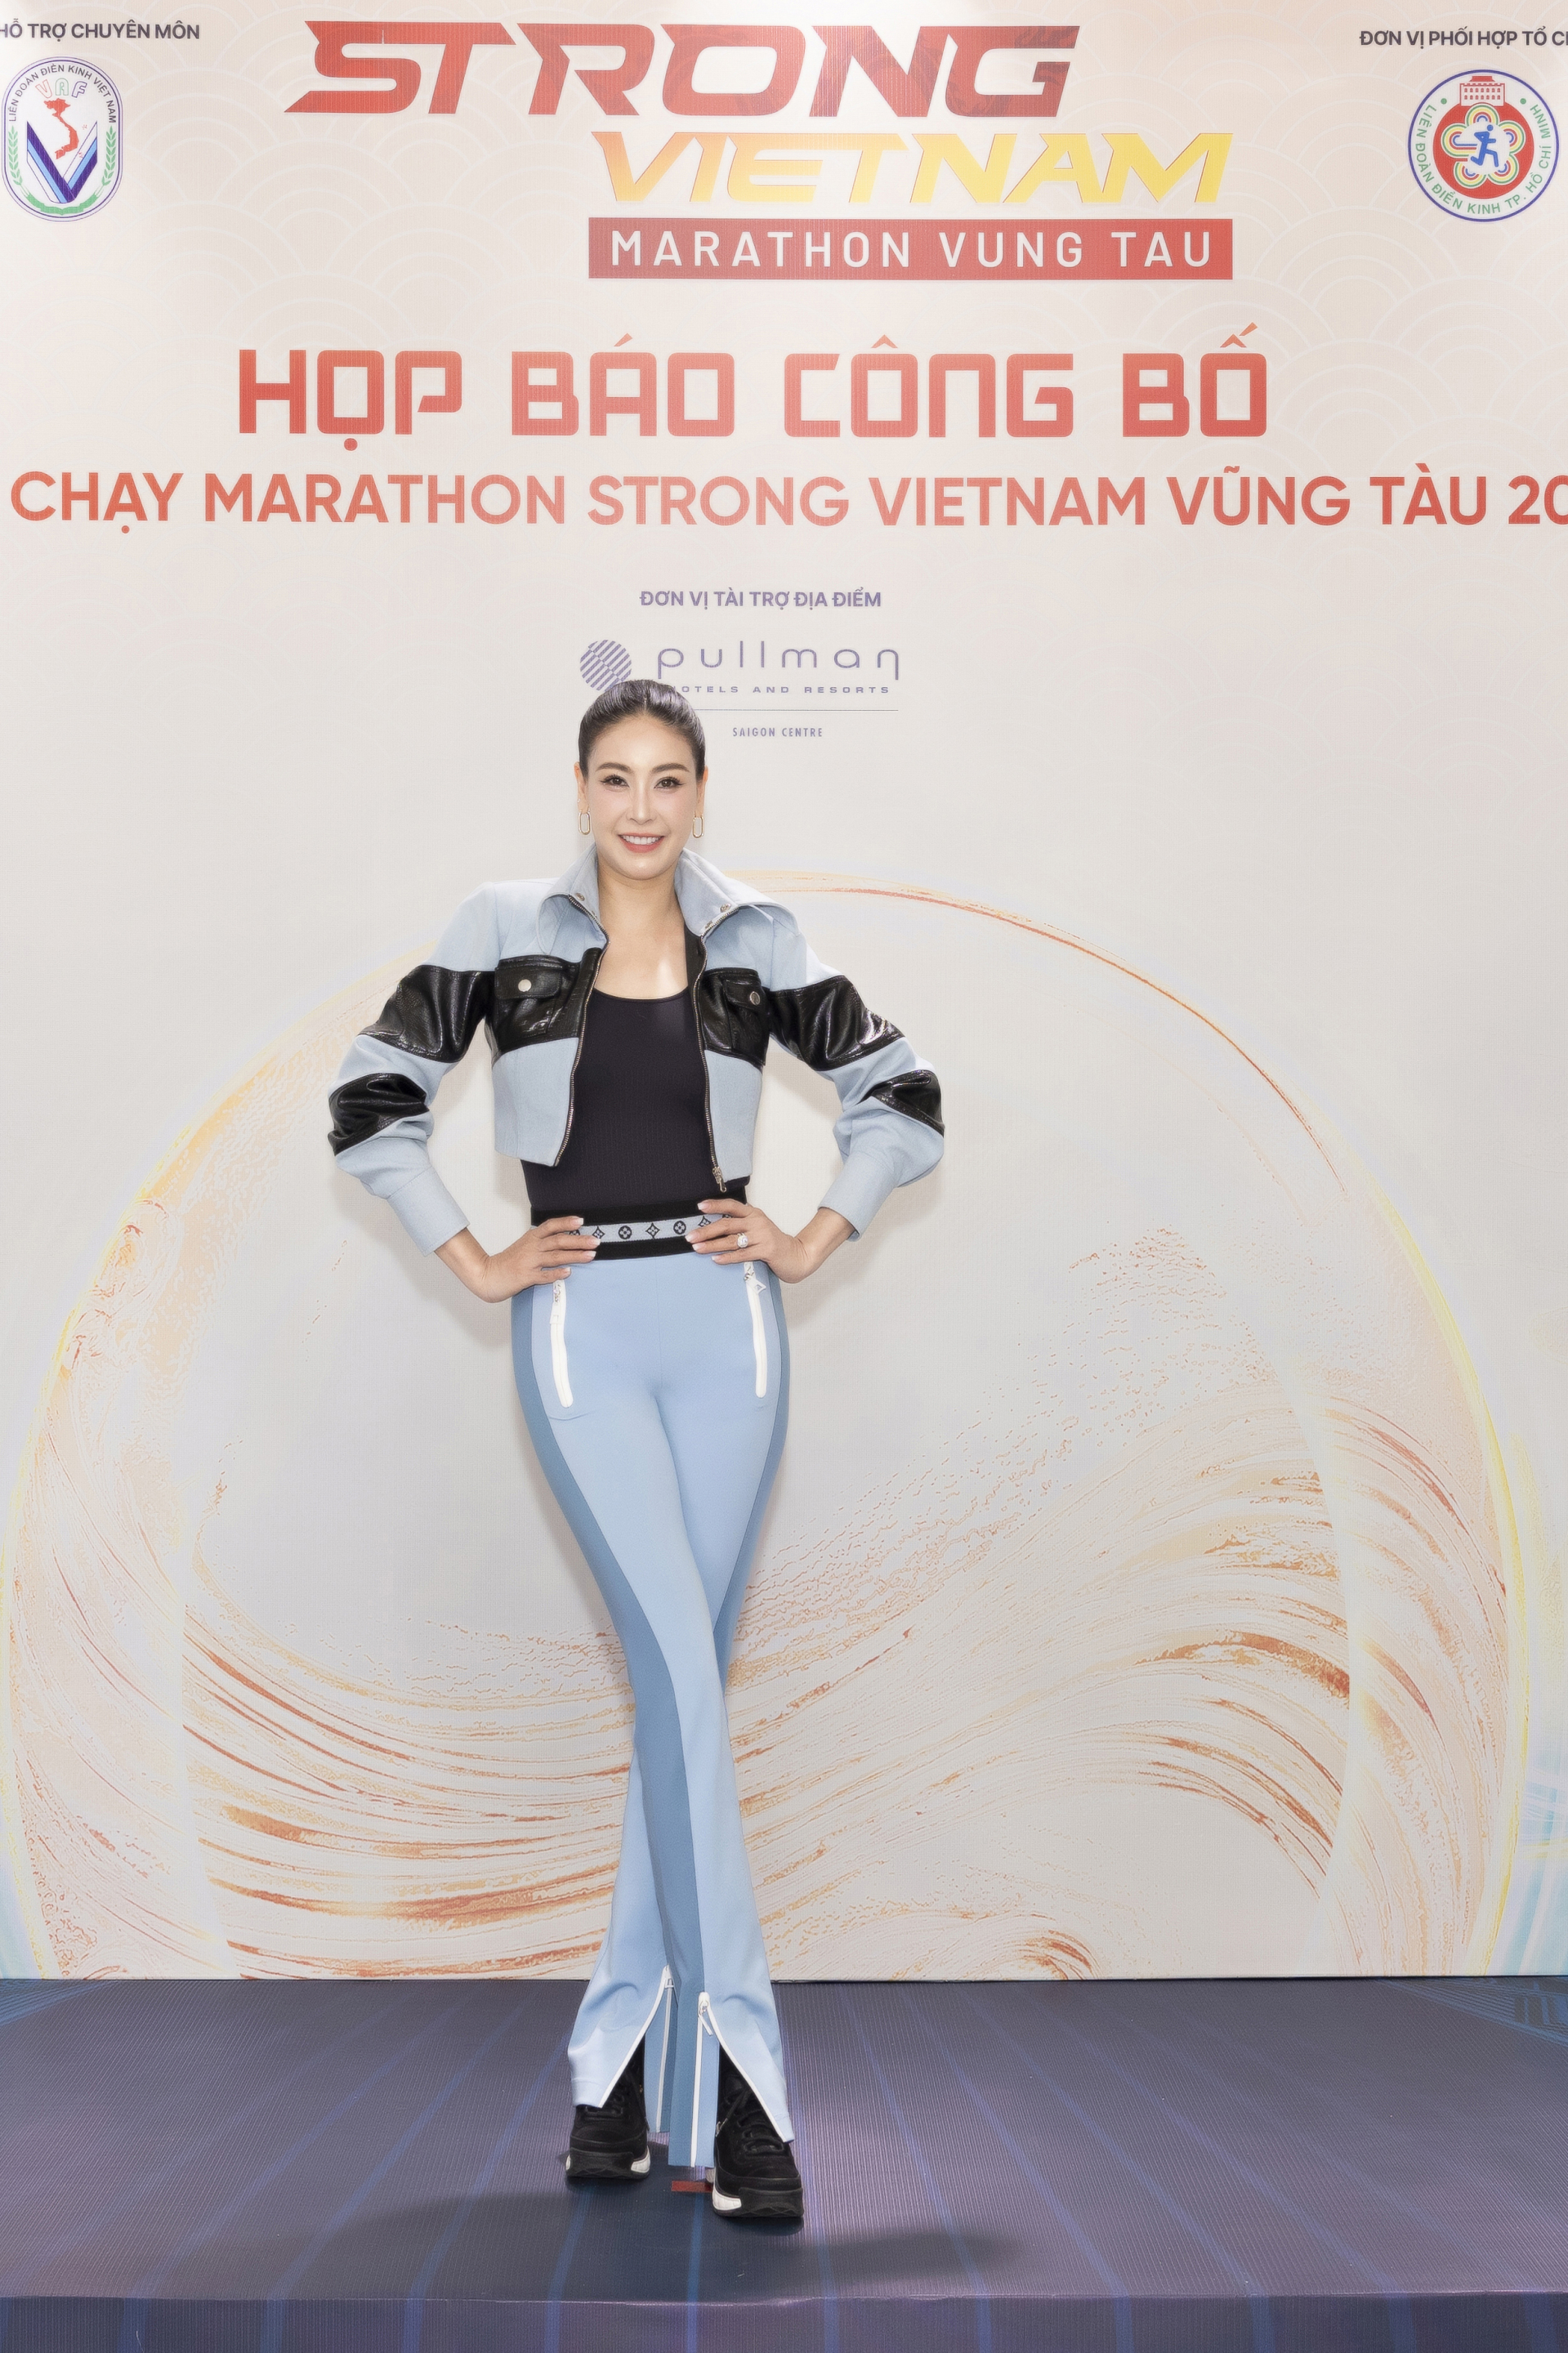 Tiểu Vy, Lương Thuỳ Linh 'rũ bỏ' váy áo, khoe dáng với đồ thể thao khởi động giải chạy - ảnh 3